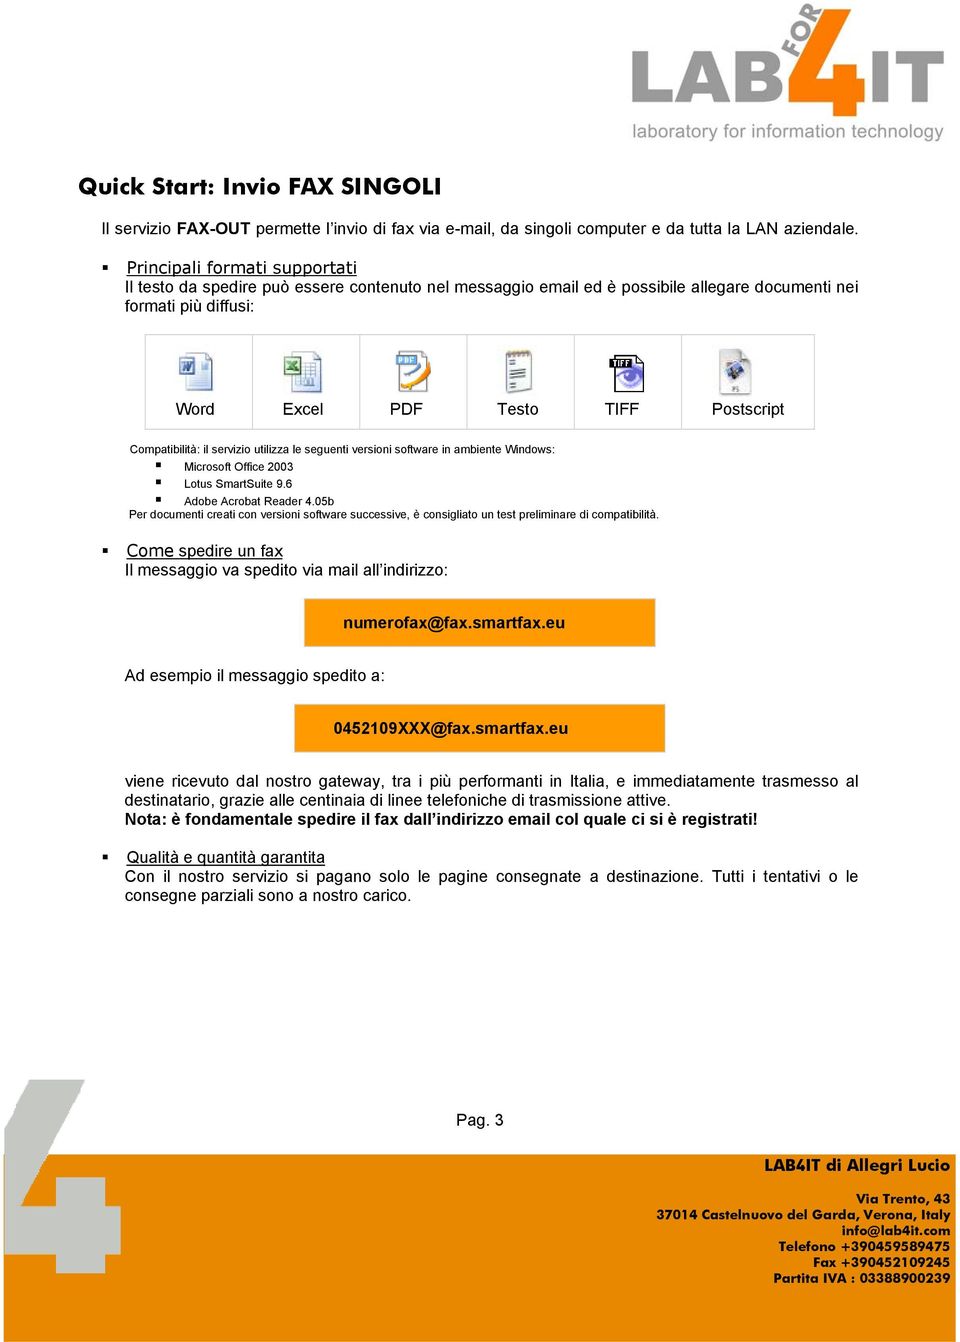 Compatibilità: il servizio utilizza le seguenti versioni software in ambiente Windows: Microsoft Office 2003 Lotus SmartSuite 9.6 Adobe Acrobat Reader 4.